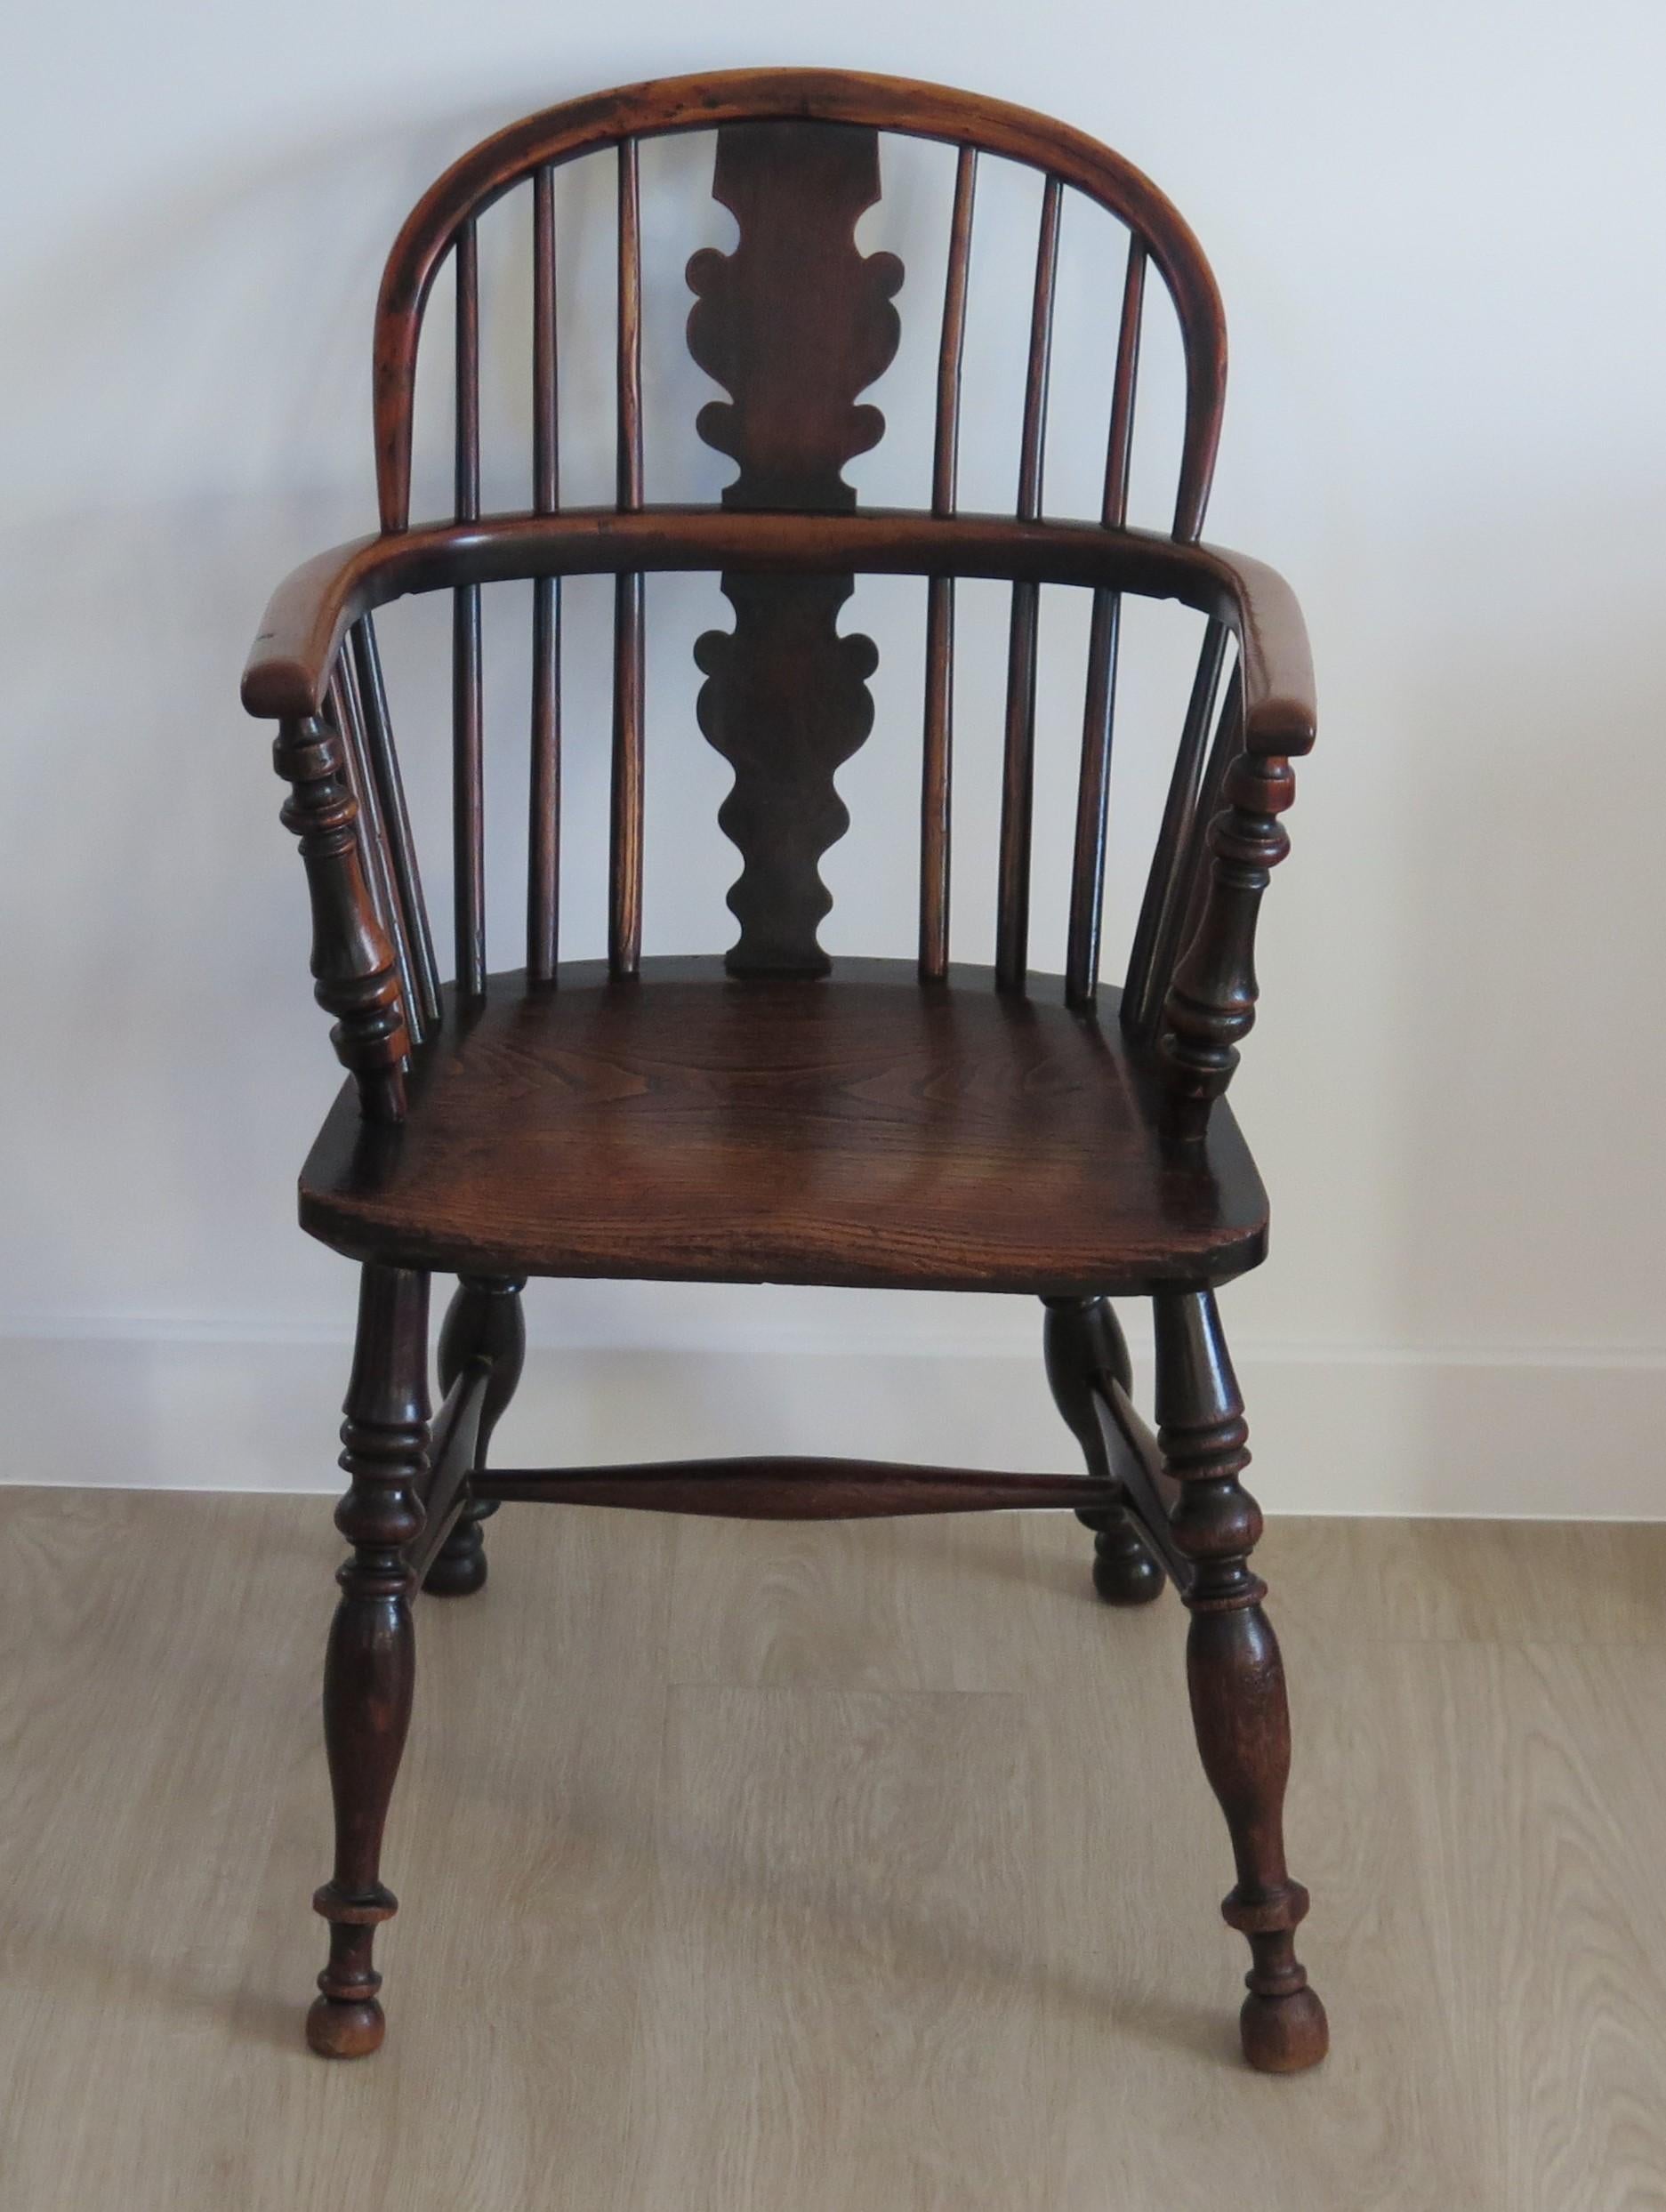 Il s'agit d'un fauteuil Windsor à dossier bas de très bonne qualité, fabriqué en Angleterre et attribué à un fabricant du nord-est du Yorkshire, au milieu du XIXe siècle, ou peut-être plus tôt.

Cette chaise présente de nombreuses caractéristiques